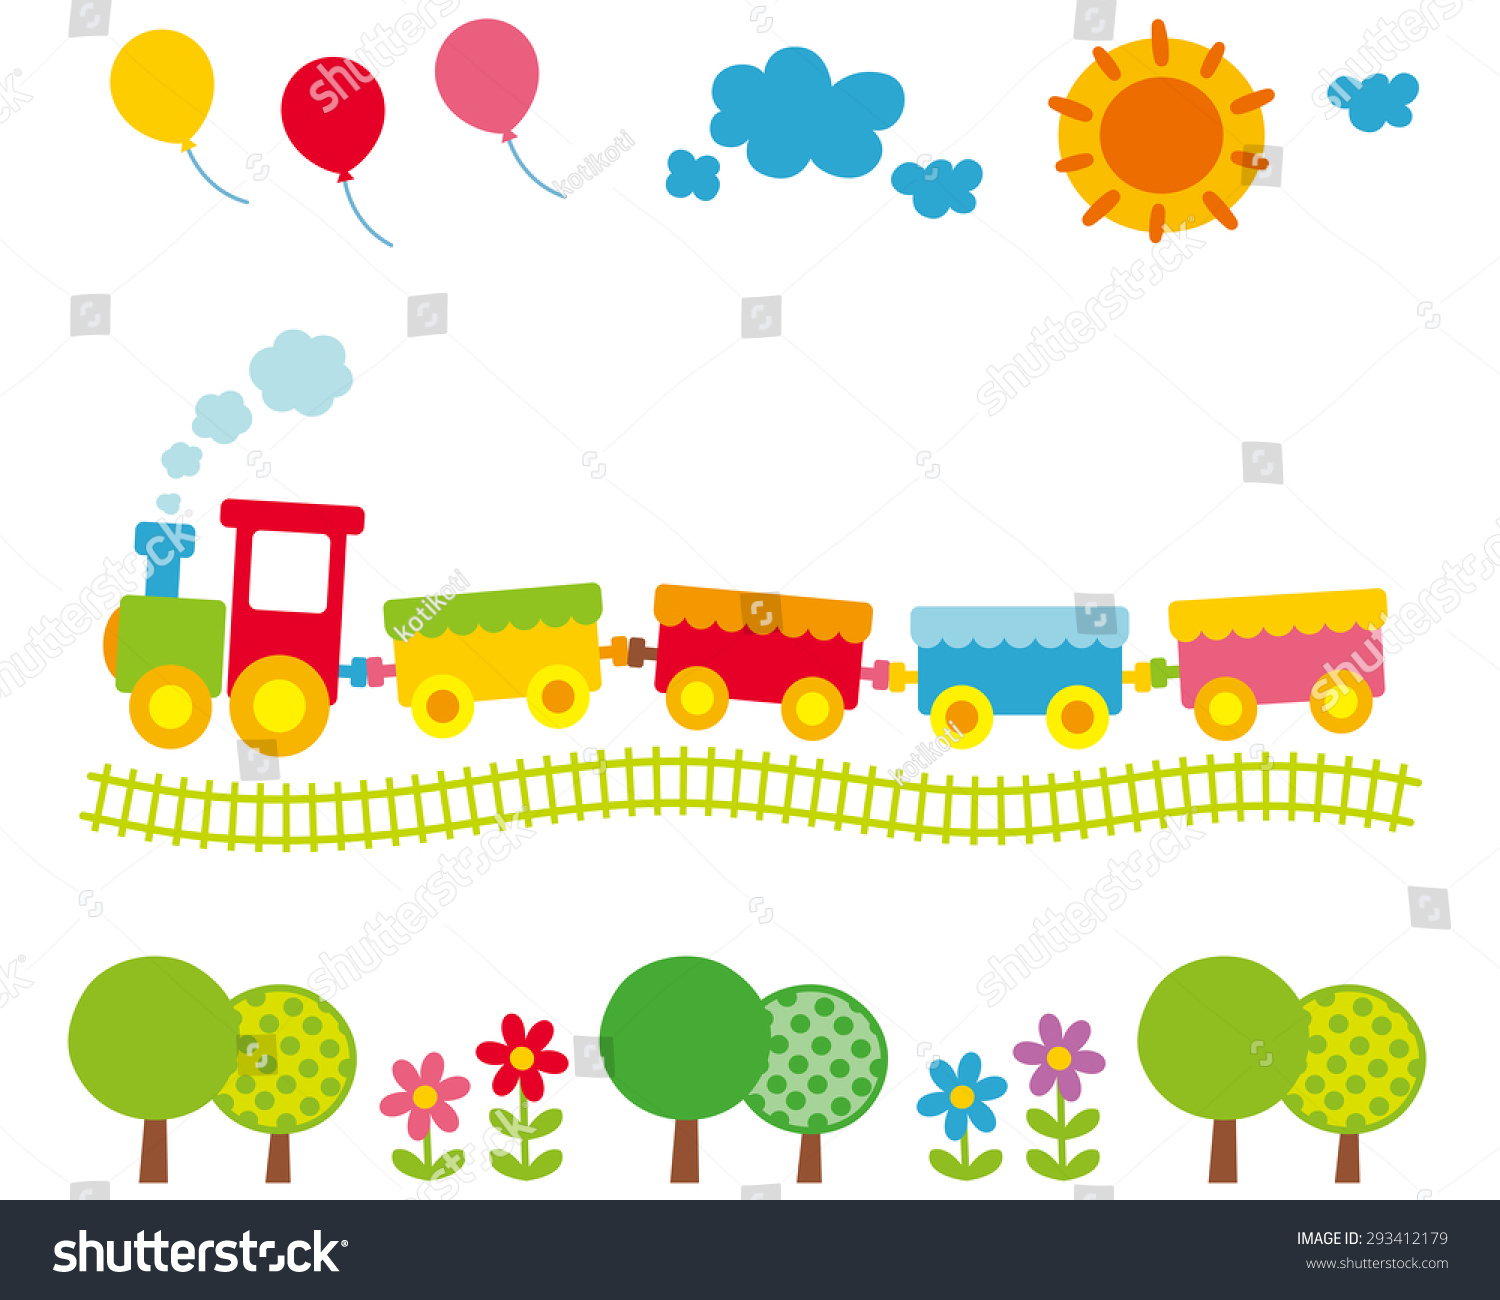 子ども向けのかわいいイラスト 風船と太陽とカラフルな電車 のイラスト素材